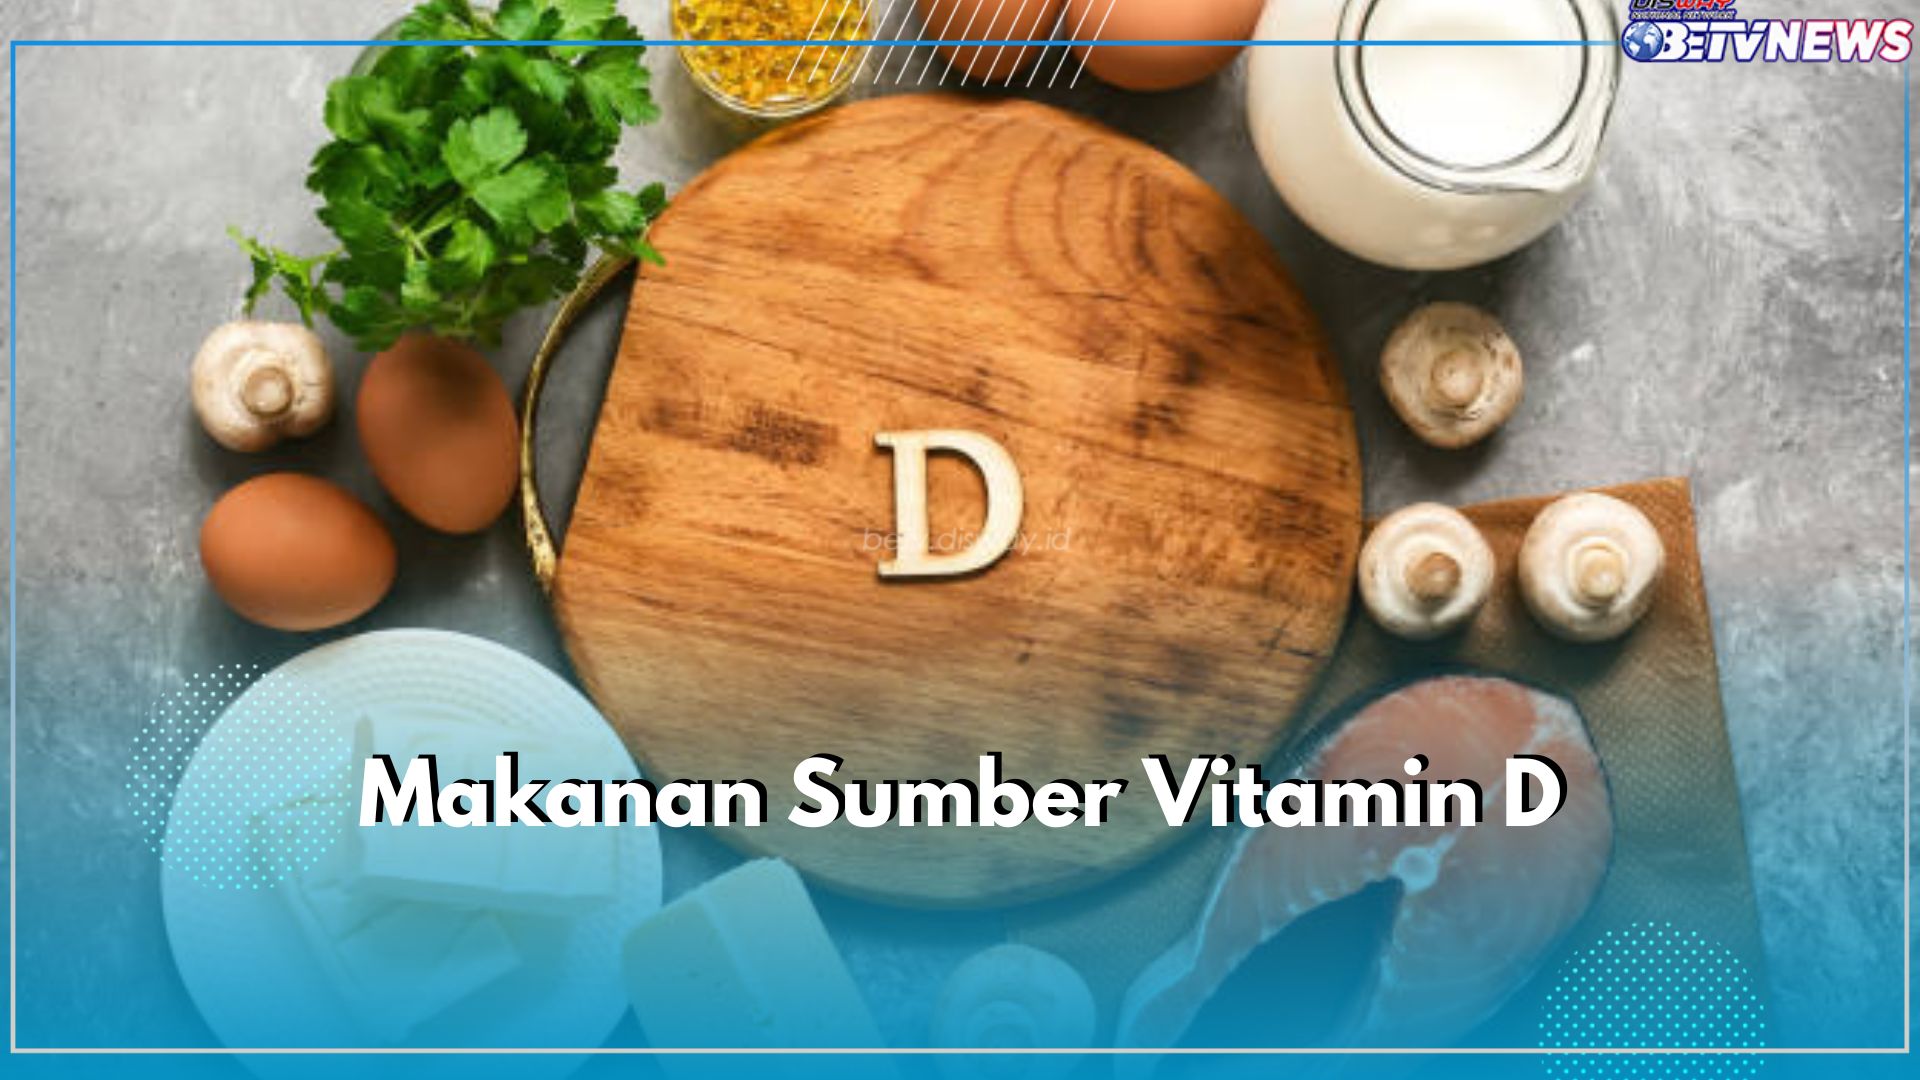 6 Makanan Sumber Vitamin D Ini Bisa Bantu Penuhi Nutrisi Tulang dan Gigi, Cek Apa Saja!